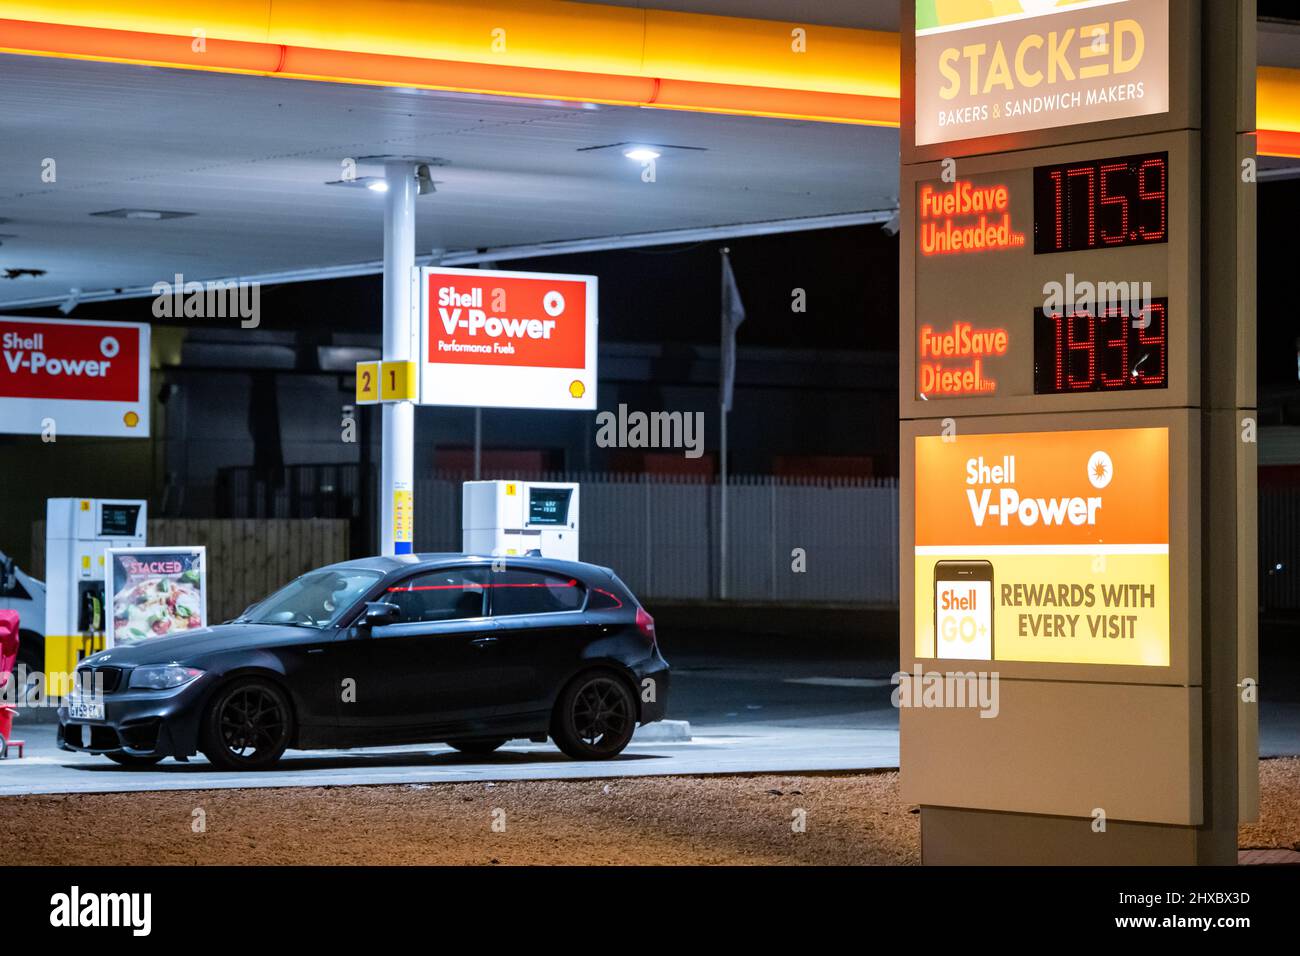 CARDIFF, GALLES - 10 MARZO: Una stazione di benzina Shell su Hadfield Road dove il carburante senza piombo costa 175,9p litri e il diesel costa 193,9p litri il 10 marzo 2022 a Cardiff, Galles. I prezzi del petrolio sono saliti di oltre il 30% dal febbraio 24, raggiungendo $139 barili questa settimana. I prezzi dell'energia sono aumentati da oltre un anno, con nuove pressioni aggiunte dall'invasione russa dell'Ucraina. Foto Stock